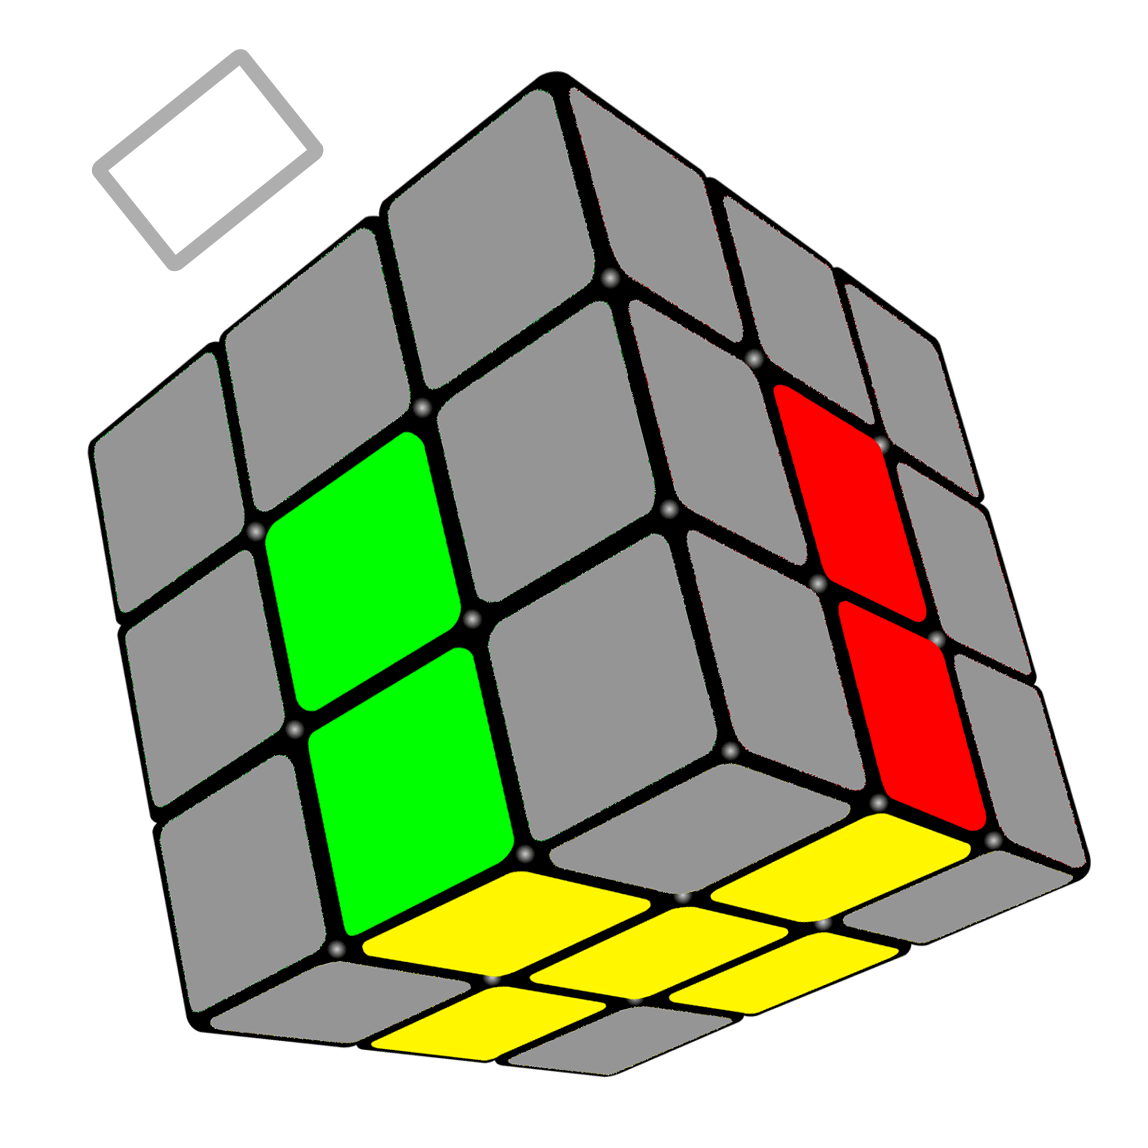 Сборка кубика крестом. Крест кубик Рубика 3х3. 3х3 Kubik Rubik formulasi. Комбинация Галка кубик Рубика 3х3.